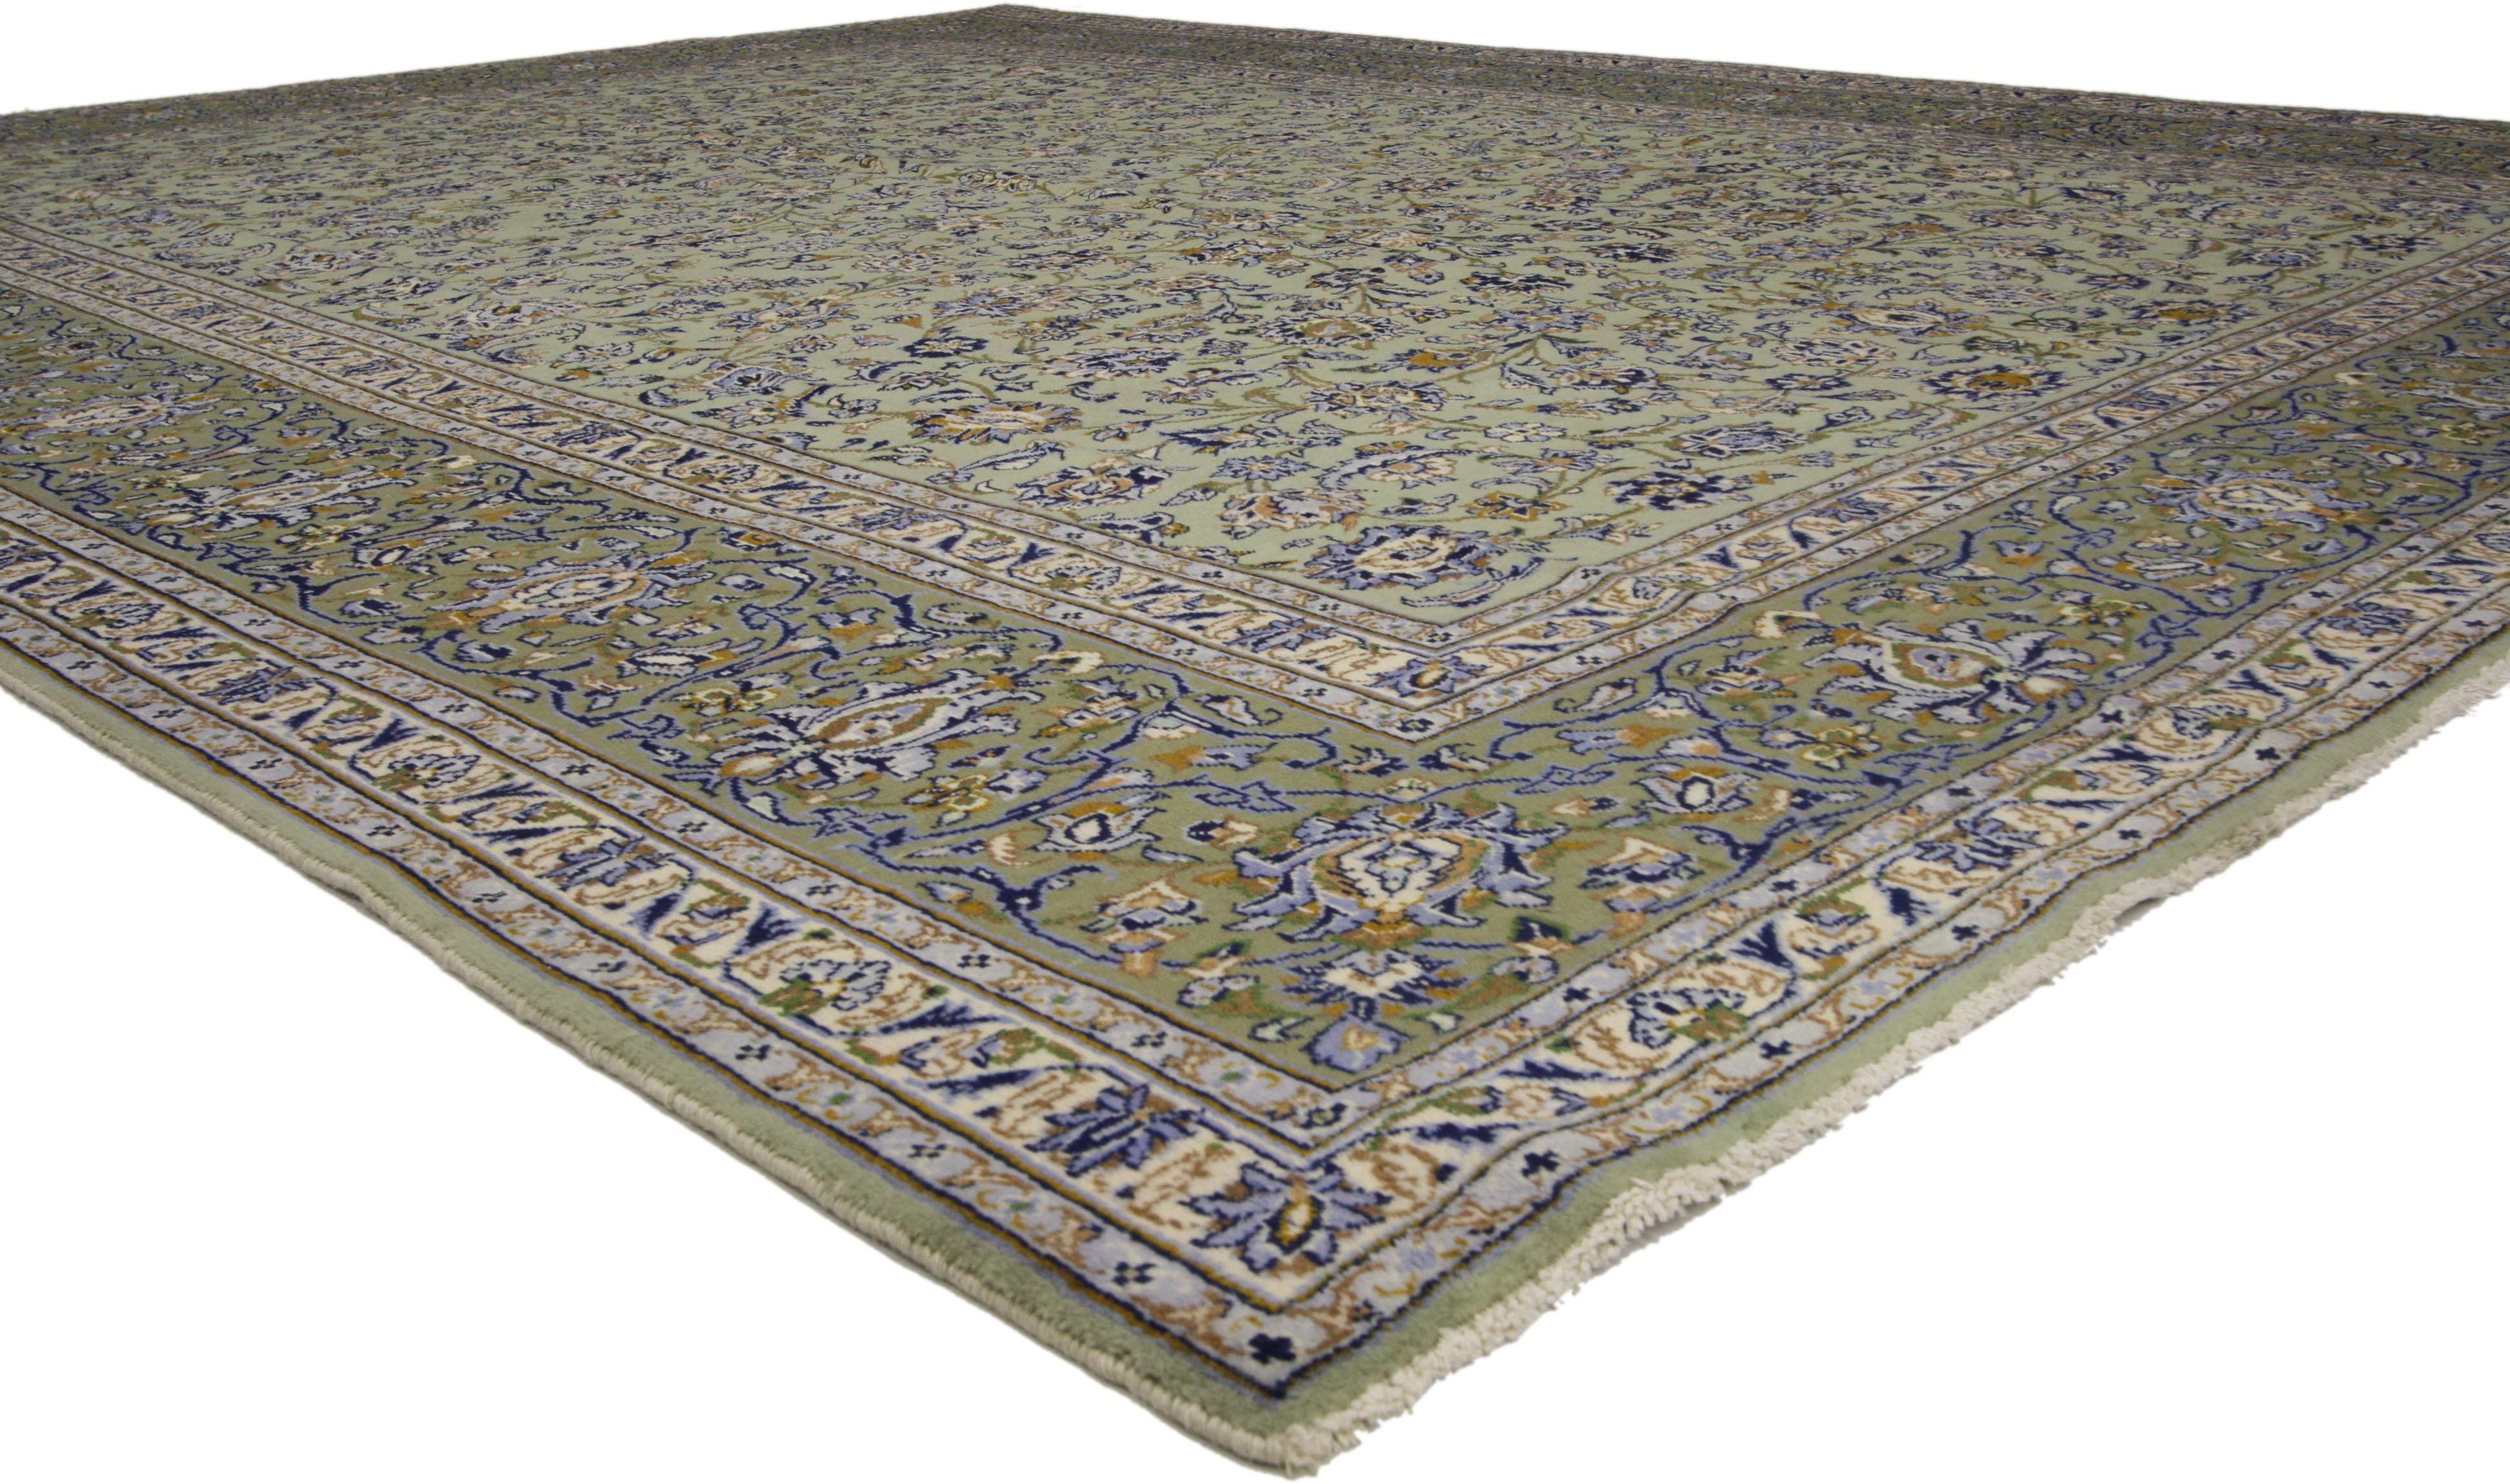 75922, Vintage Persian Yazd Area Rug with French Country Style 09'08 x 12'08. Dieser persische Yazd-Teppich im Vintage-Stil besticht durch seine florale Fülle in einer Vielzahl von Farben und sein unendlich faszinierendes Allover-Muster auf einem